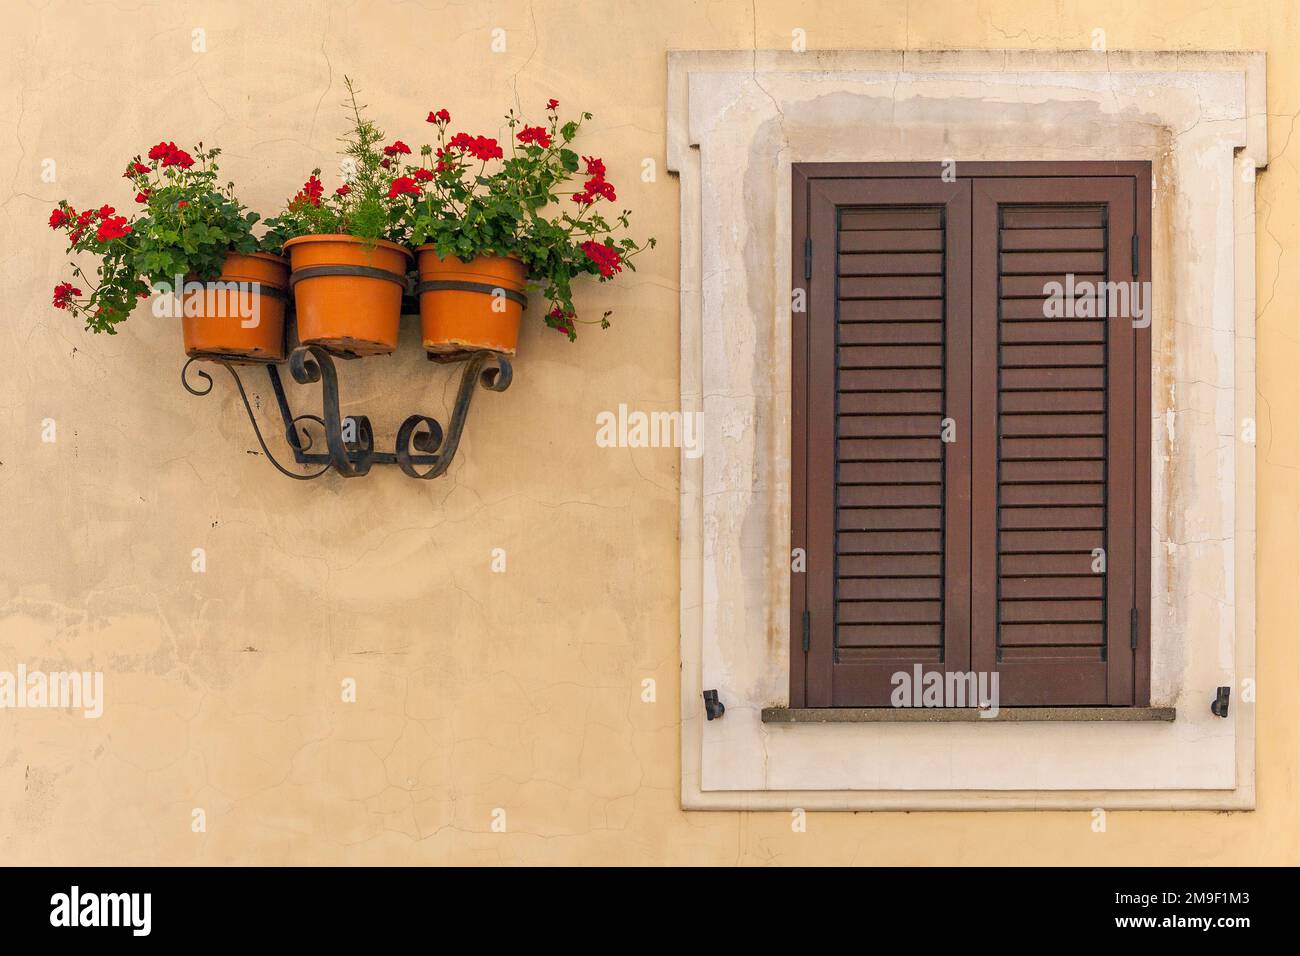 Vasi da fiori e persiane in legno, Castel Gandolfo, Italia Foto Stock